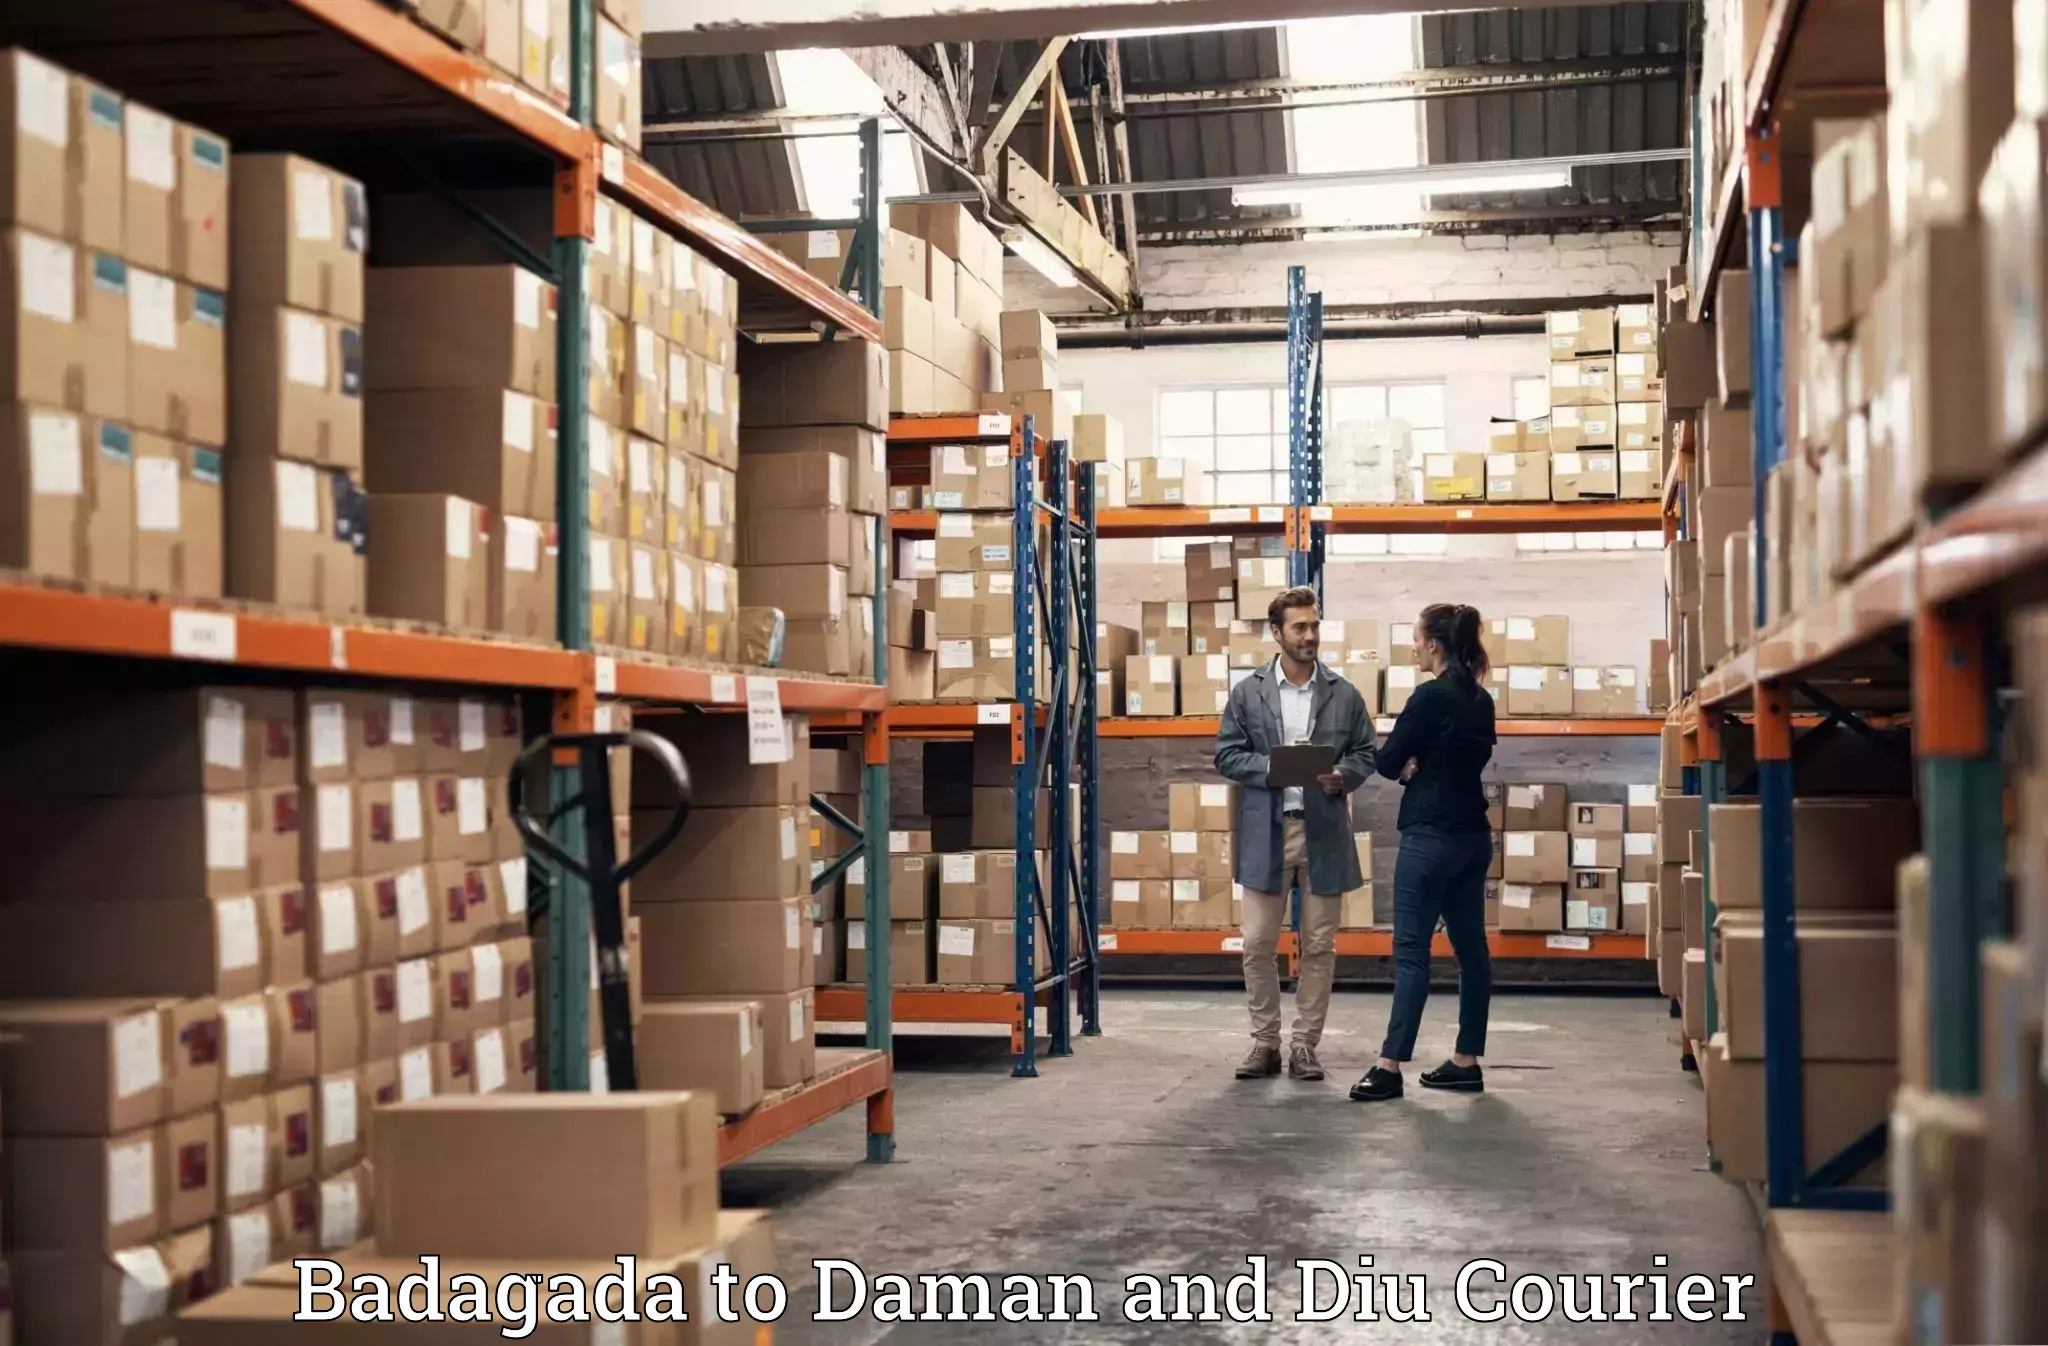 Furniture transport and storage Badagada to Diu